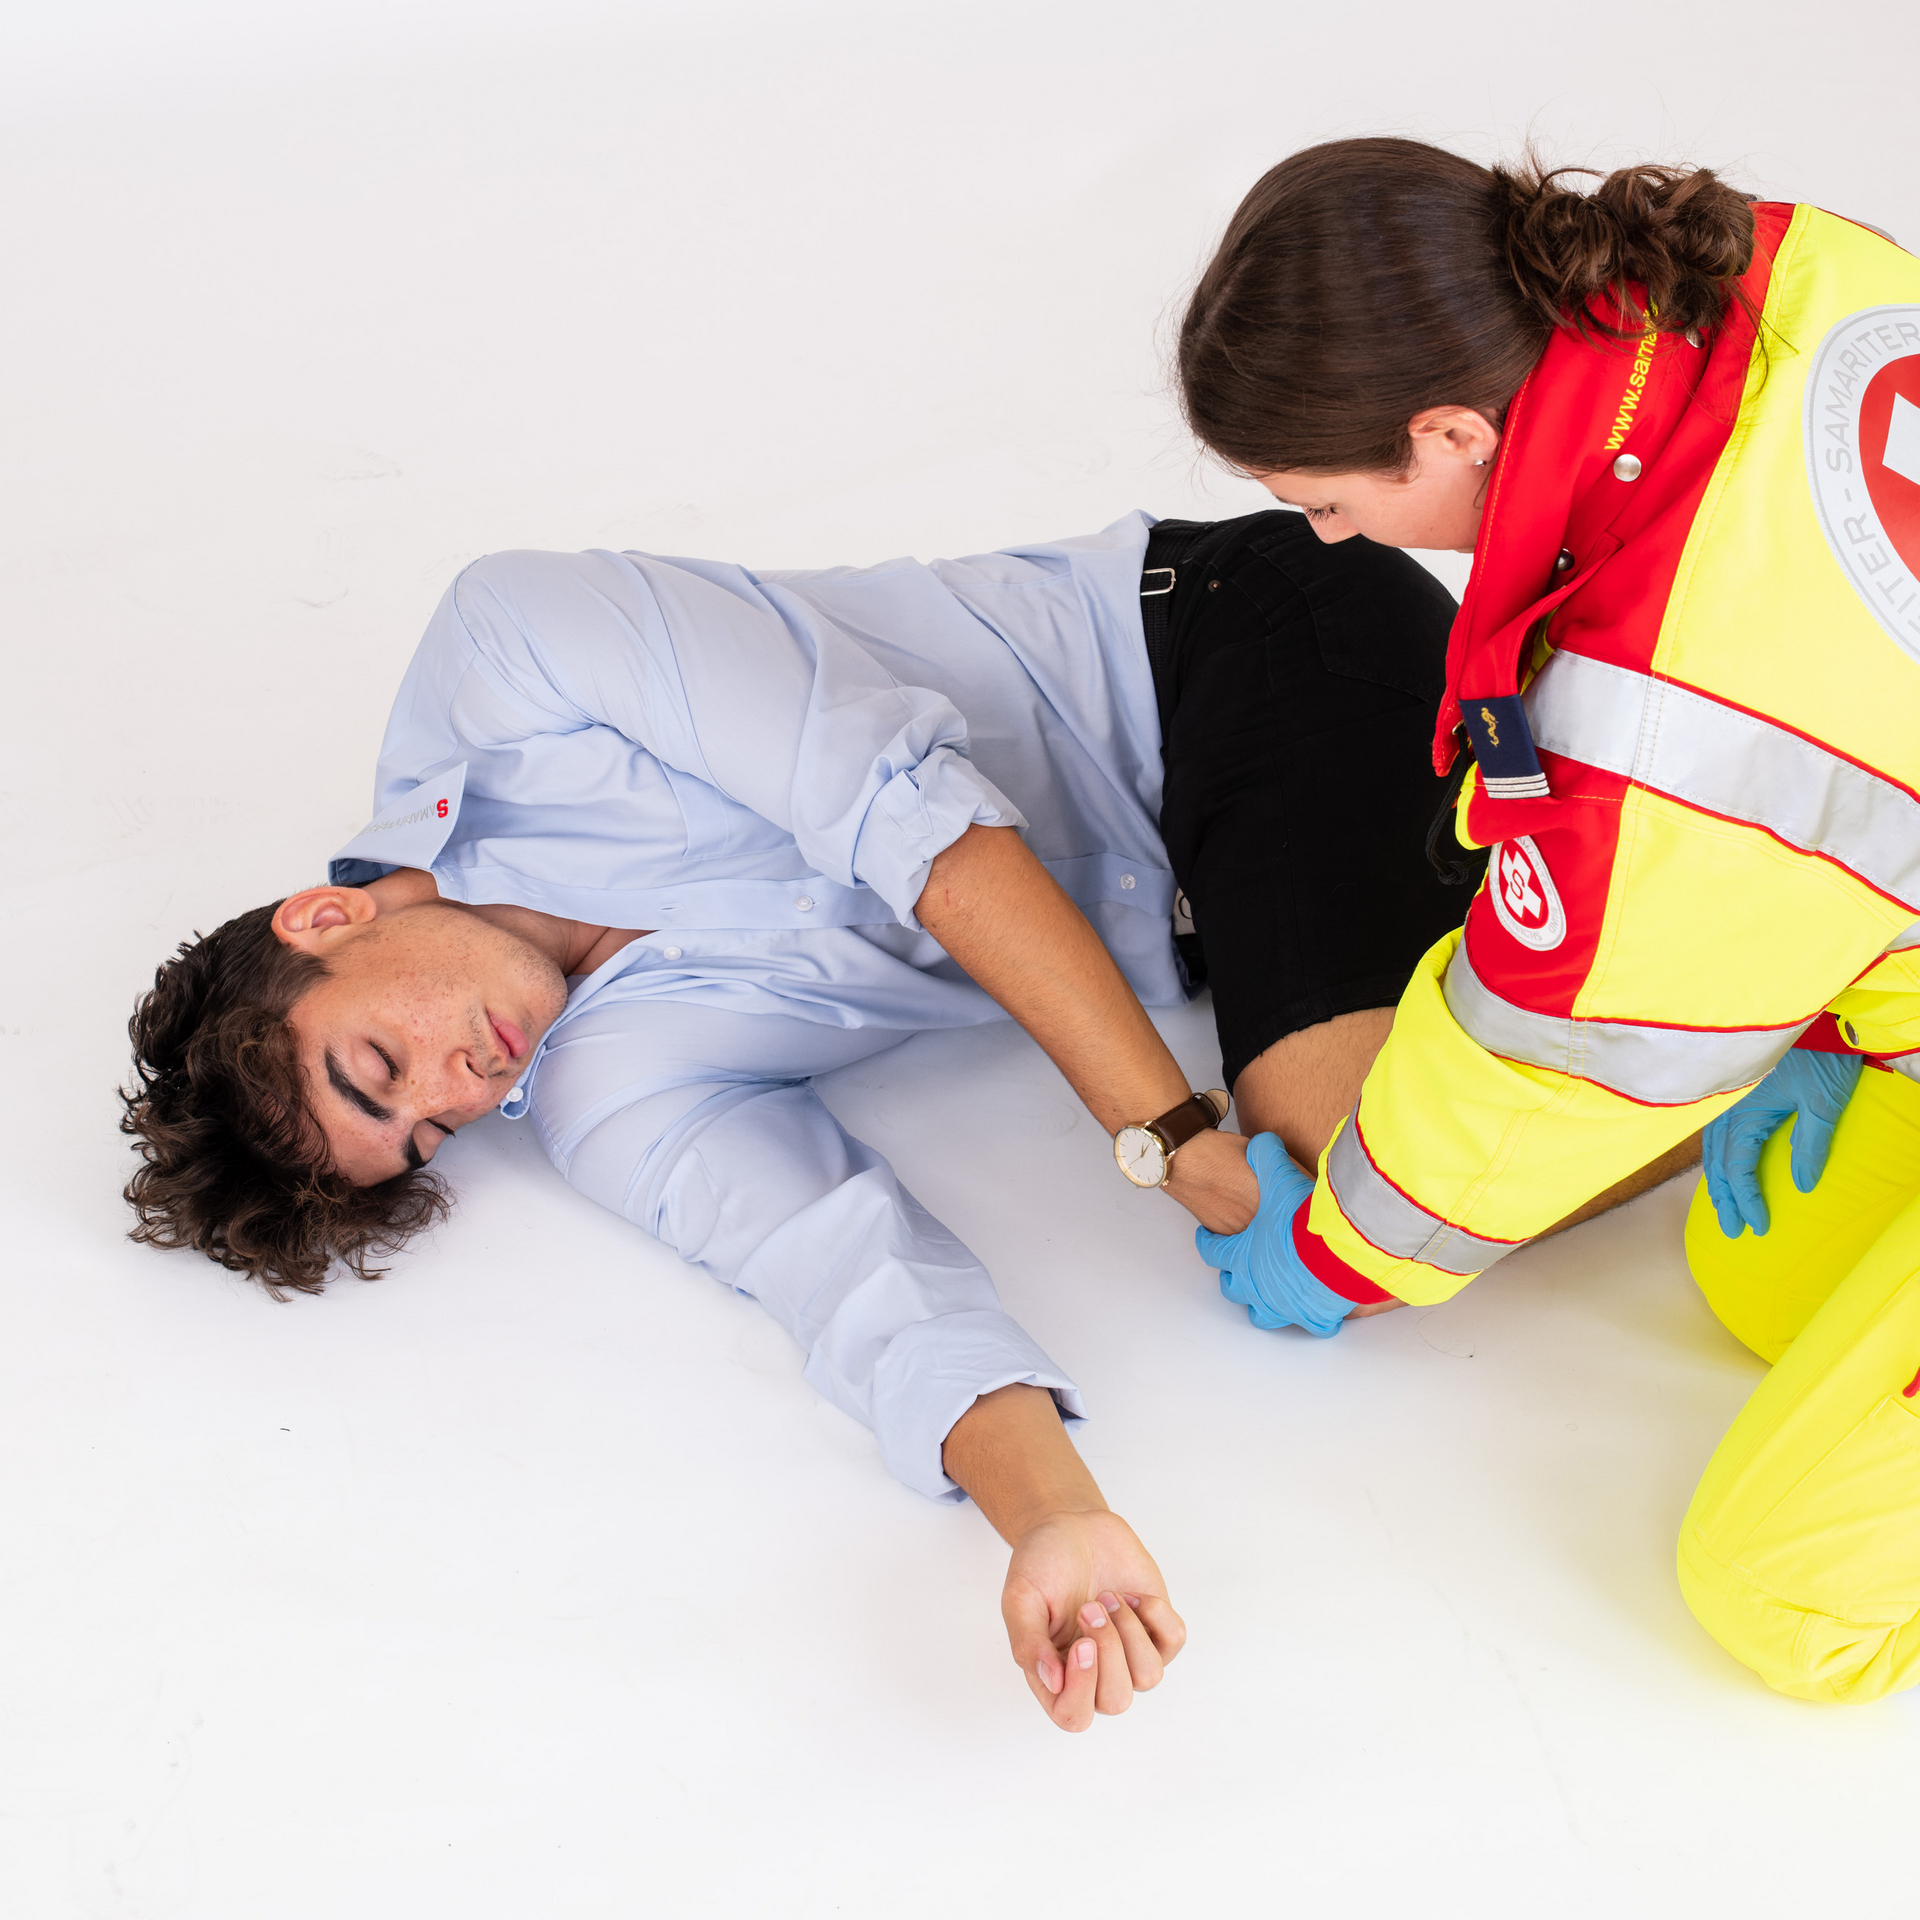 Rettungssanitäterin bringt Patient in stabile Seitenlage